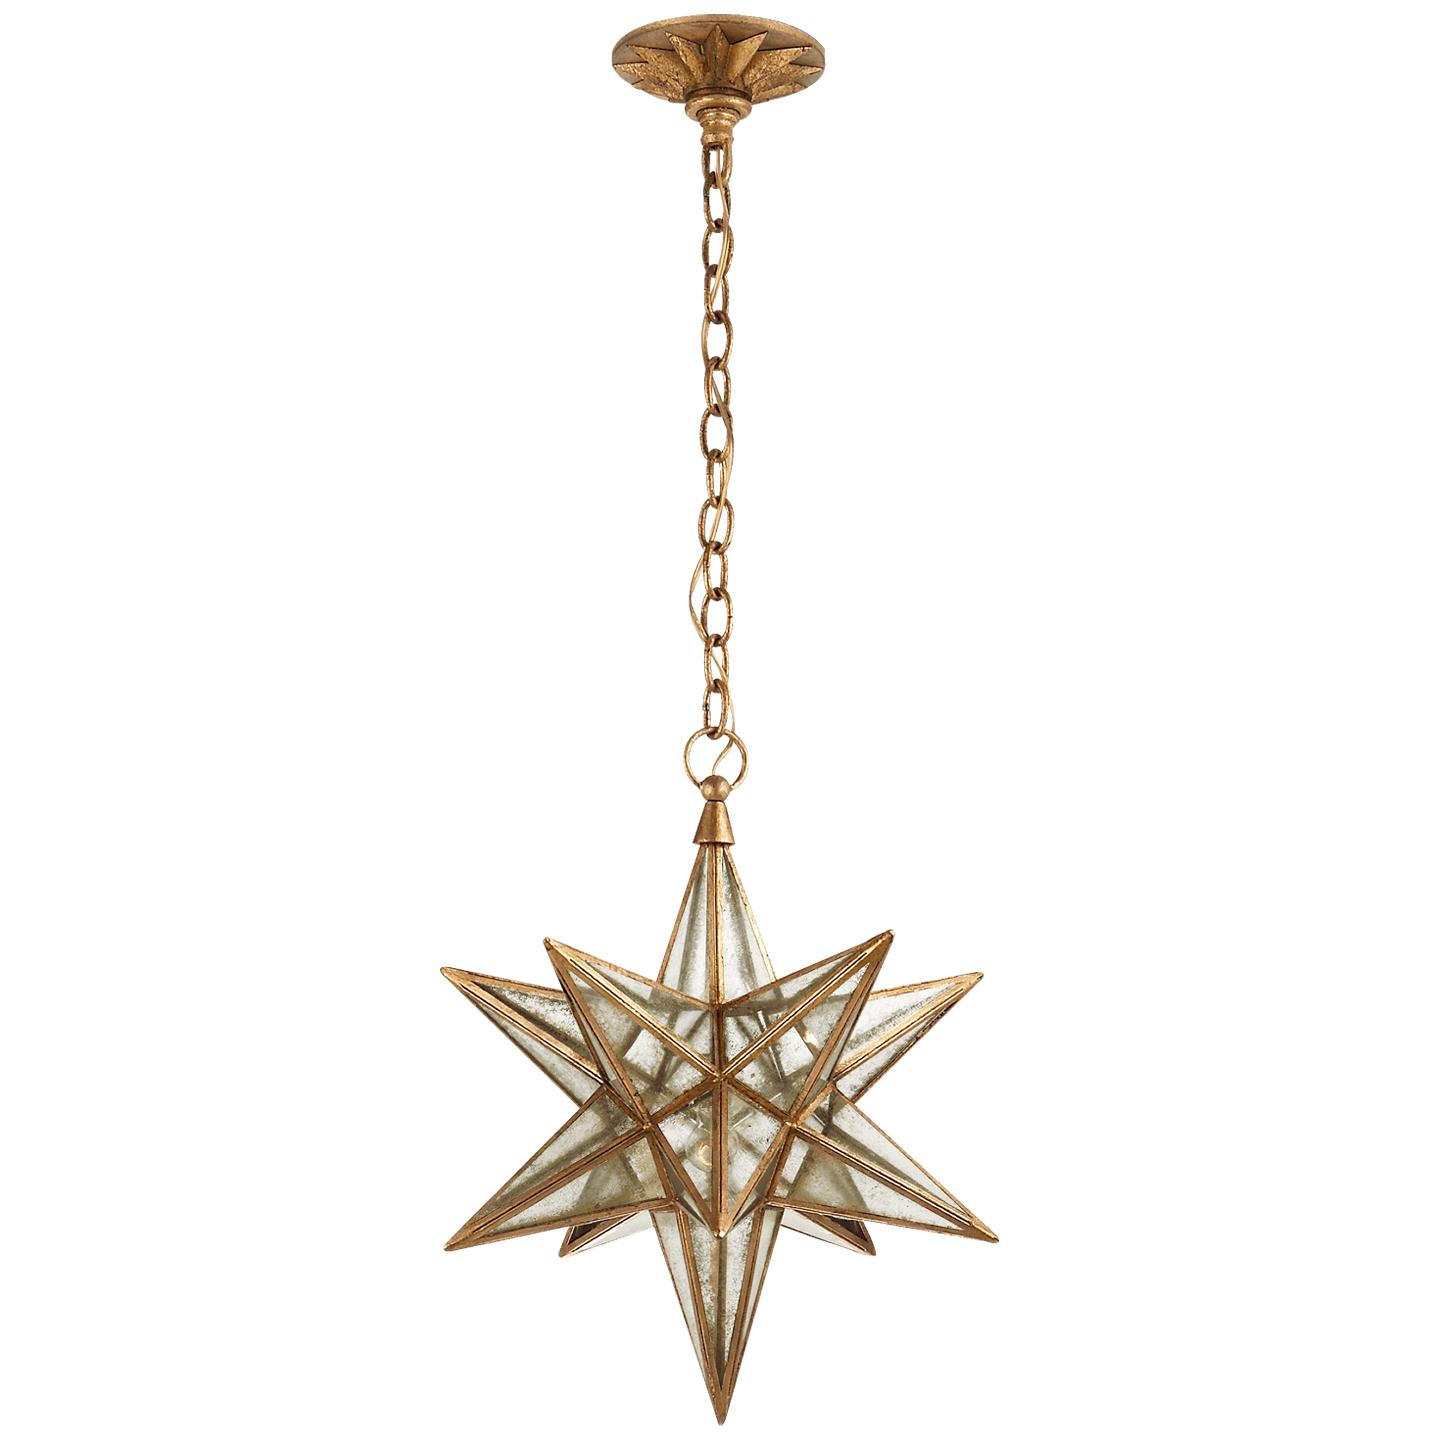 Купить Подвесной светильник Moravian Medium Star Lantern в интернет-магазине roooms.ru